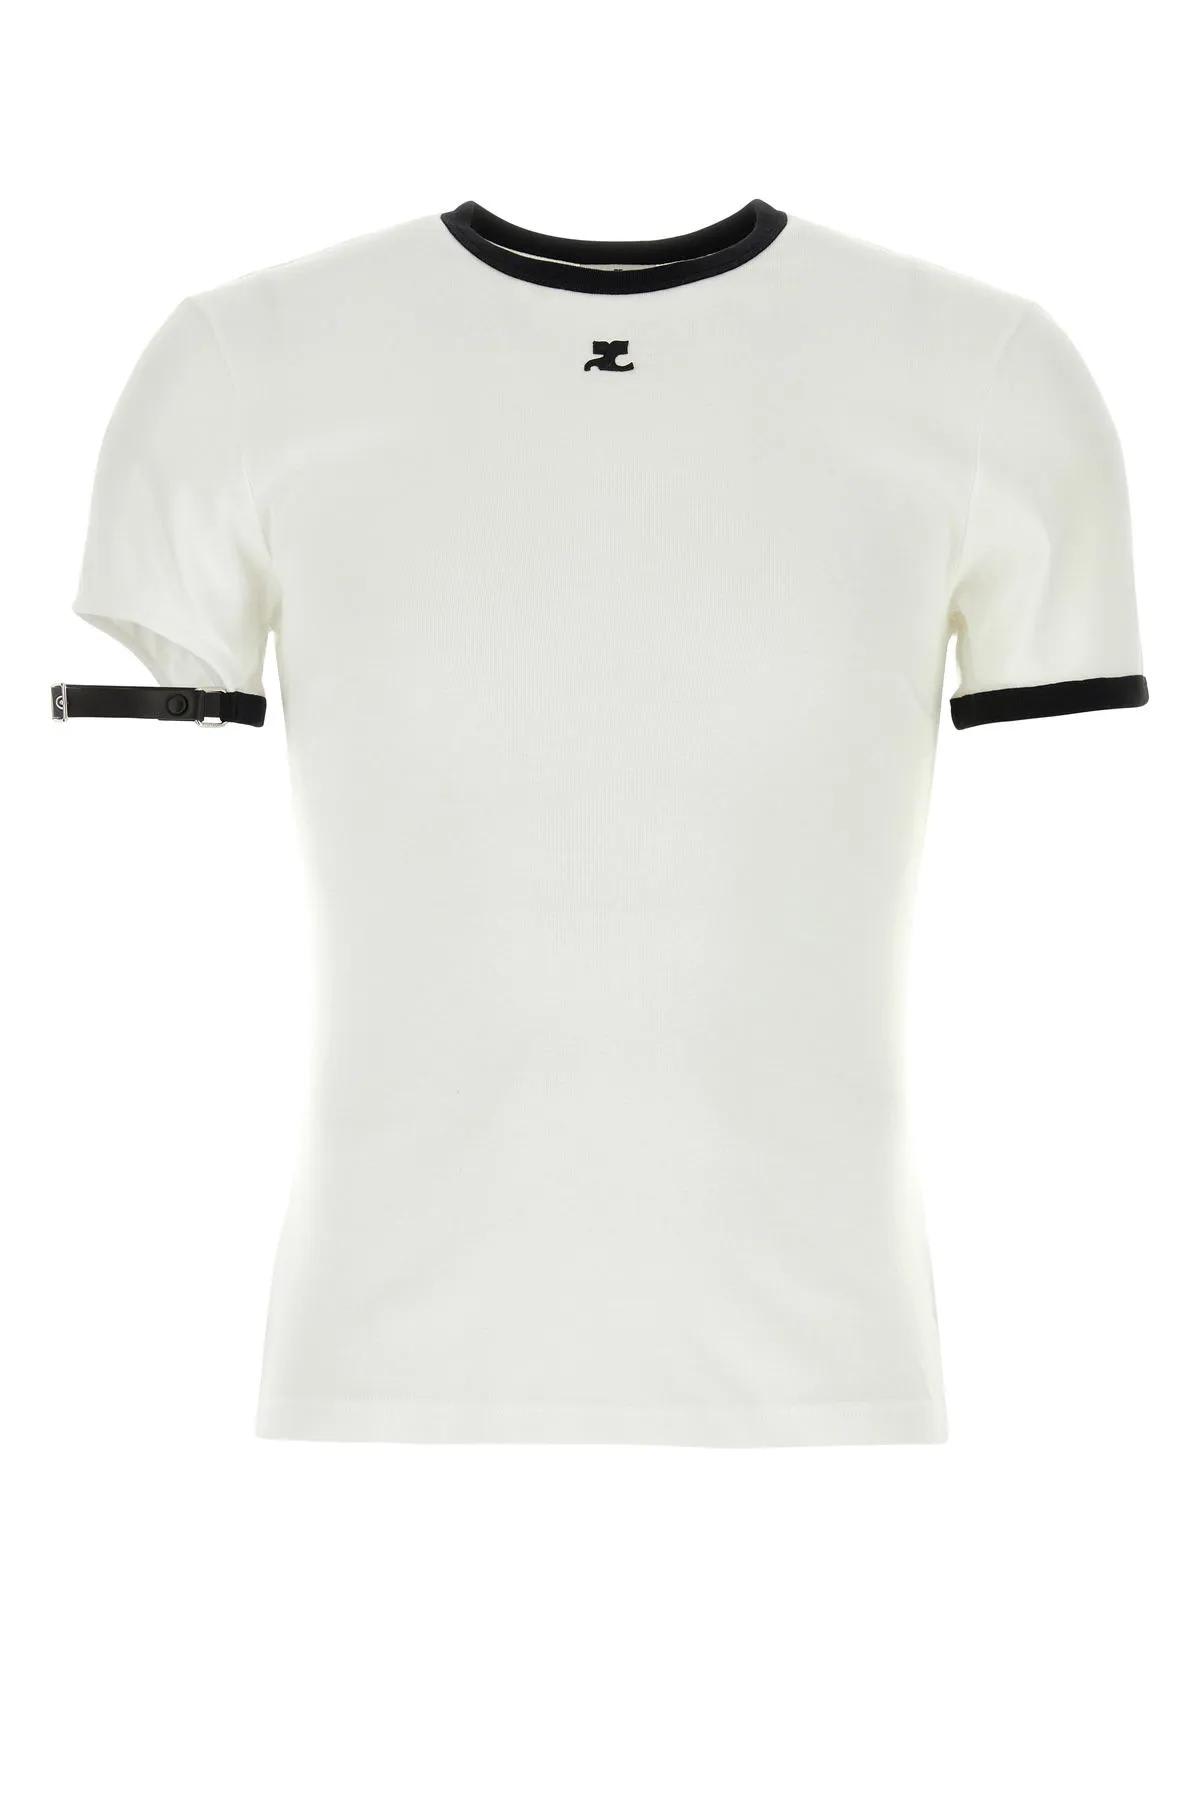 Shop Courrèges White Cotton T-shirt In White/black